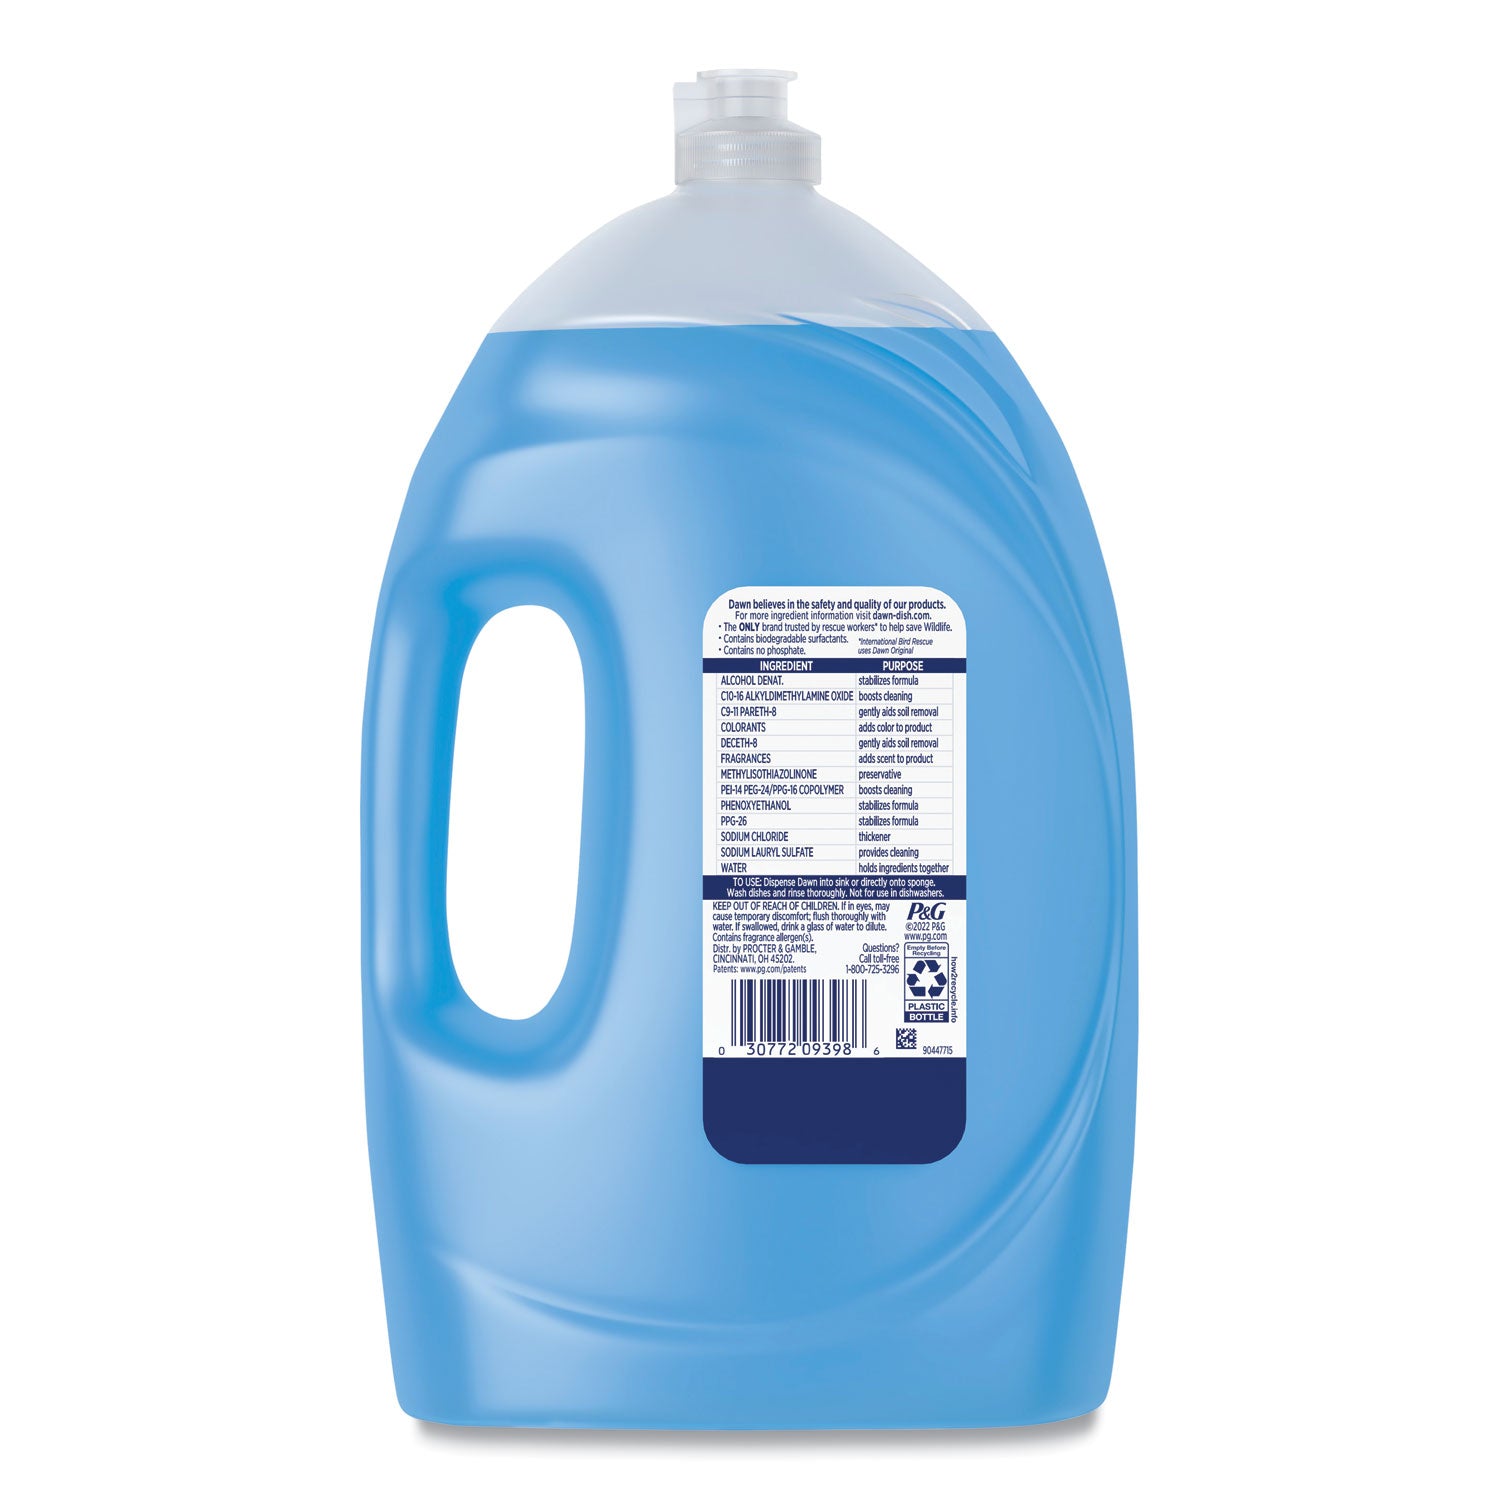 ultra-liquid-dish-detergent-original-scent-70-oz-6-carton_pgc09398 - 4